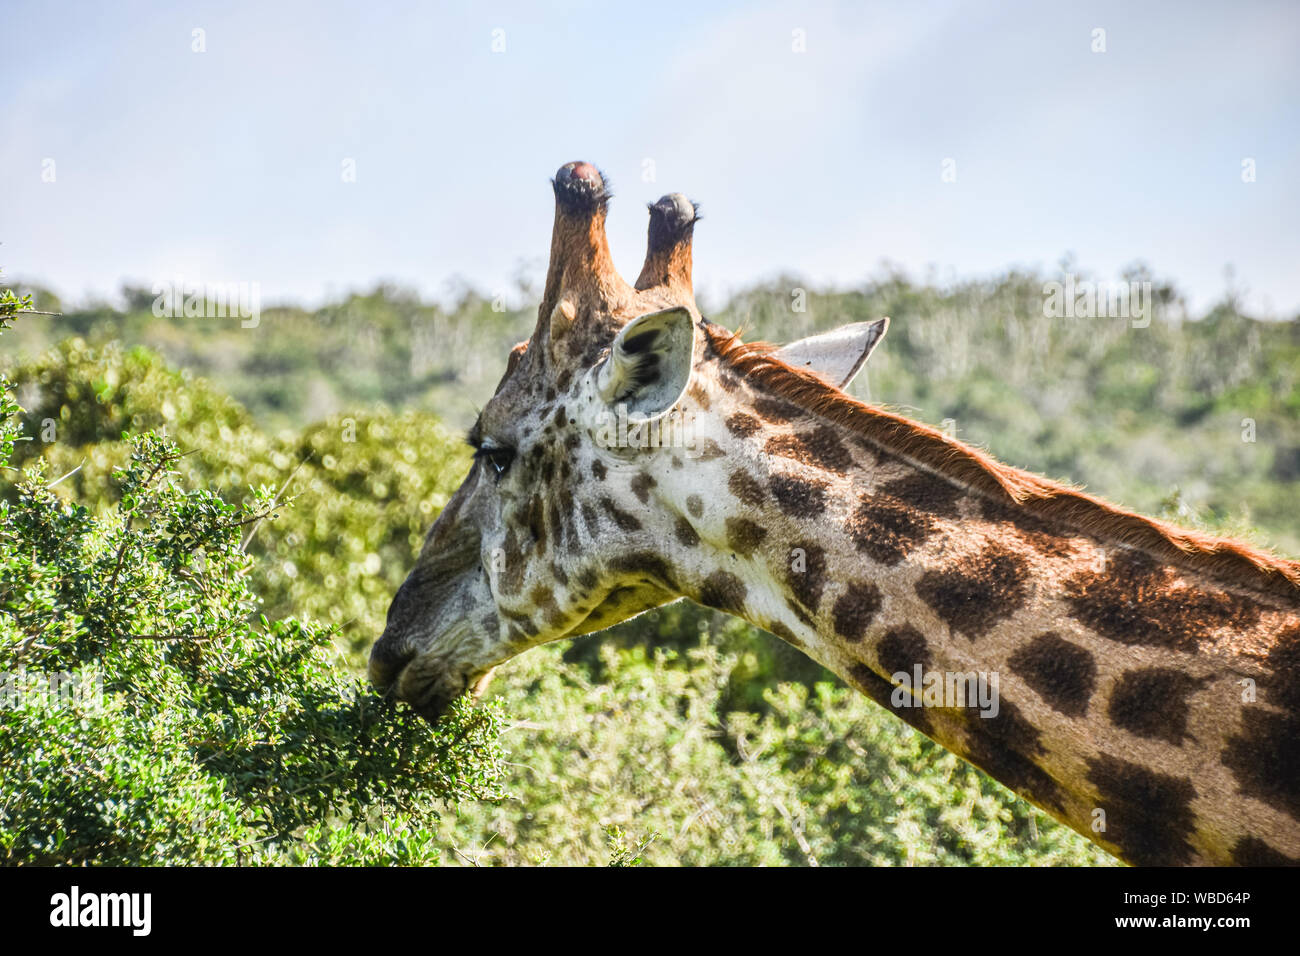 Voir le profil de l'entendre et le cou de giraffe eating Banque D'Images